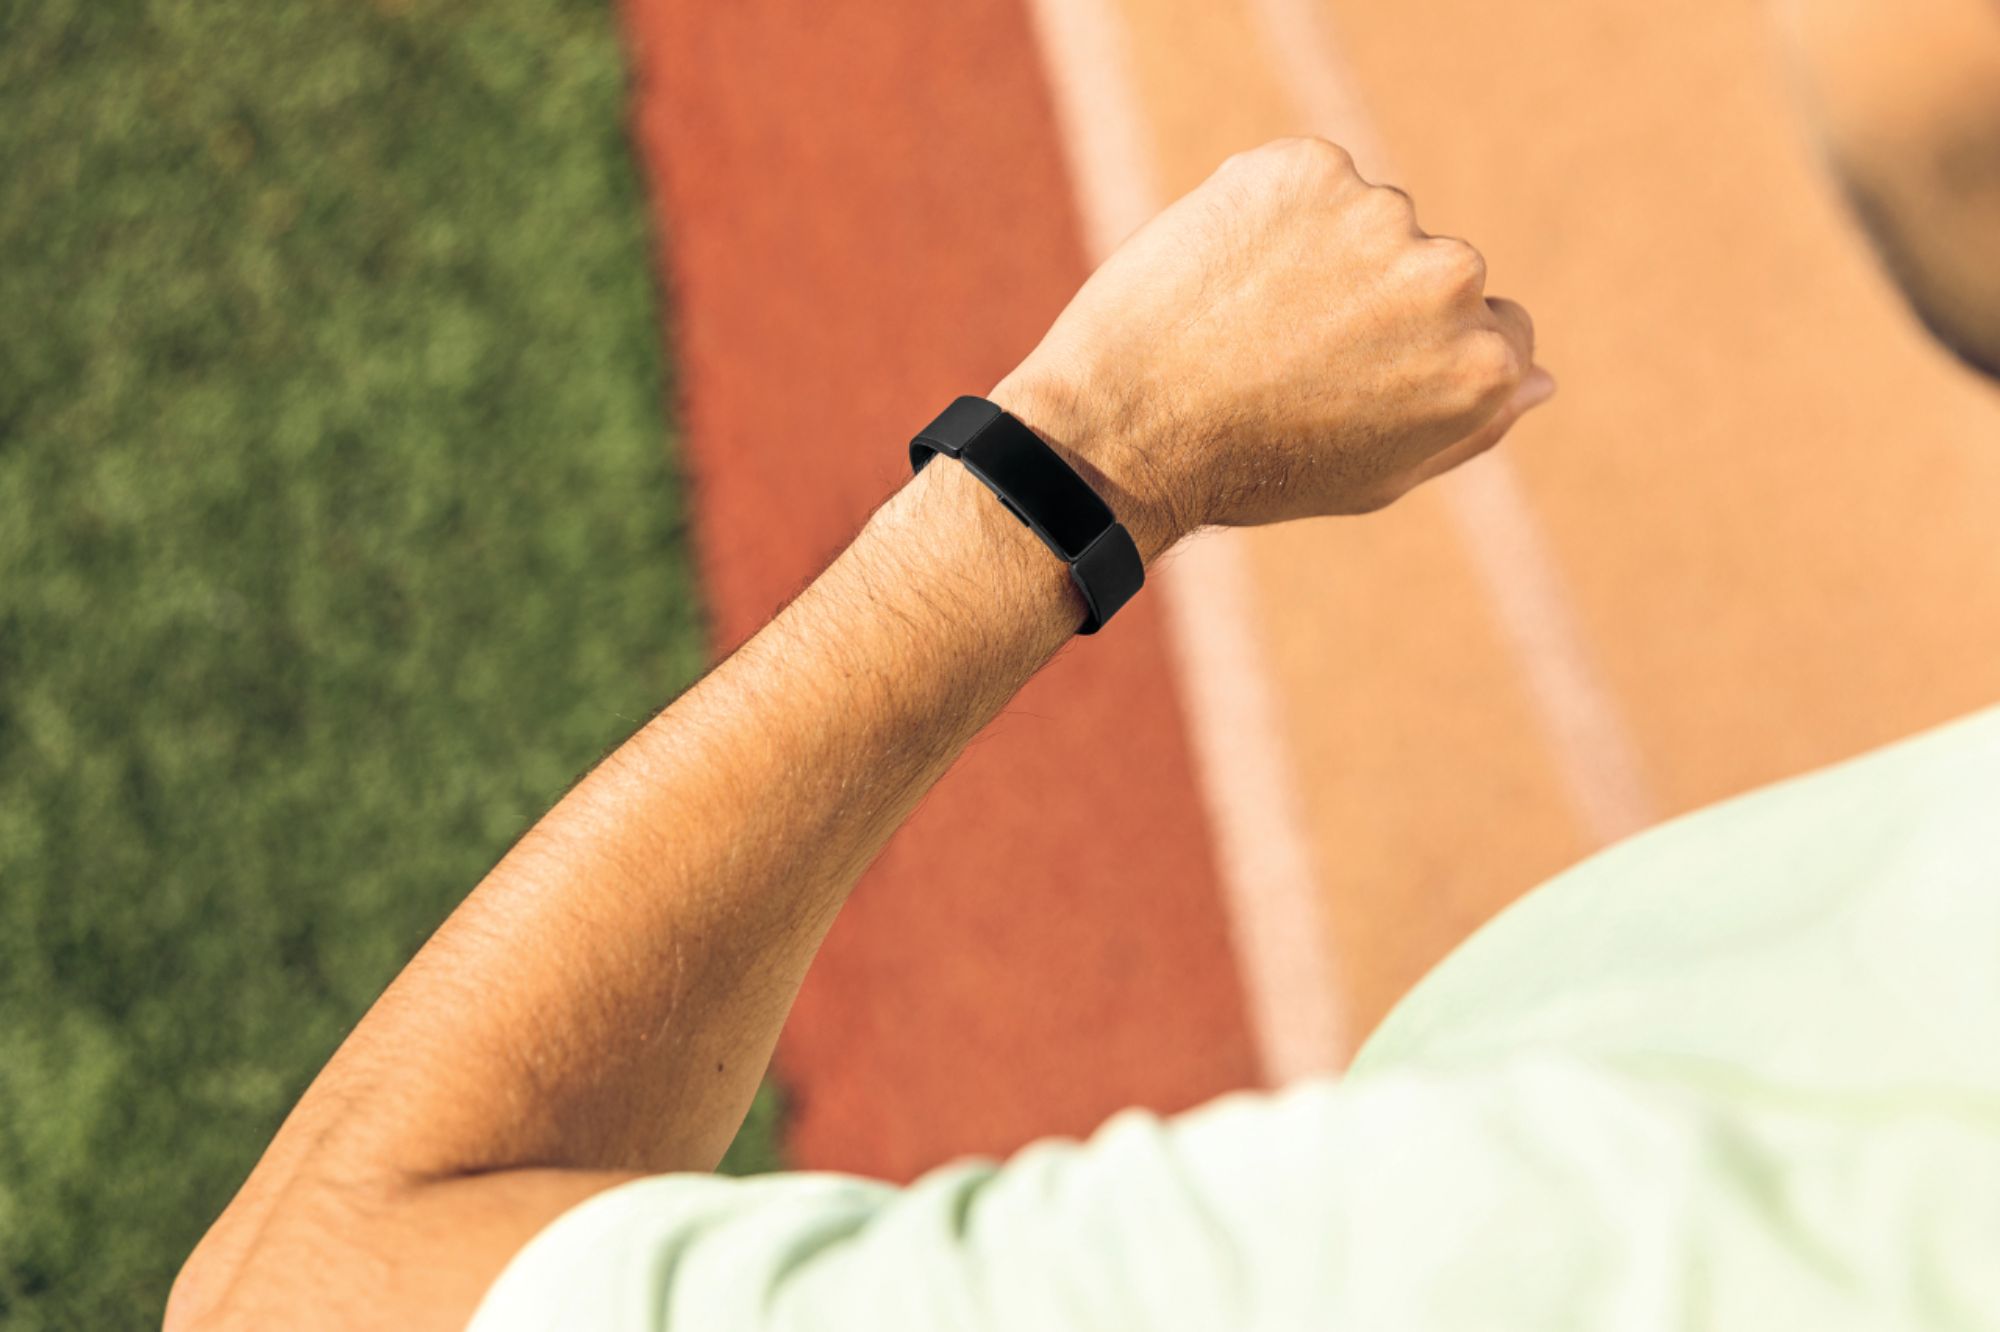 Best Buy: Fitbit Inspire 2 Fitness Tracker Black FB418BKBK